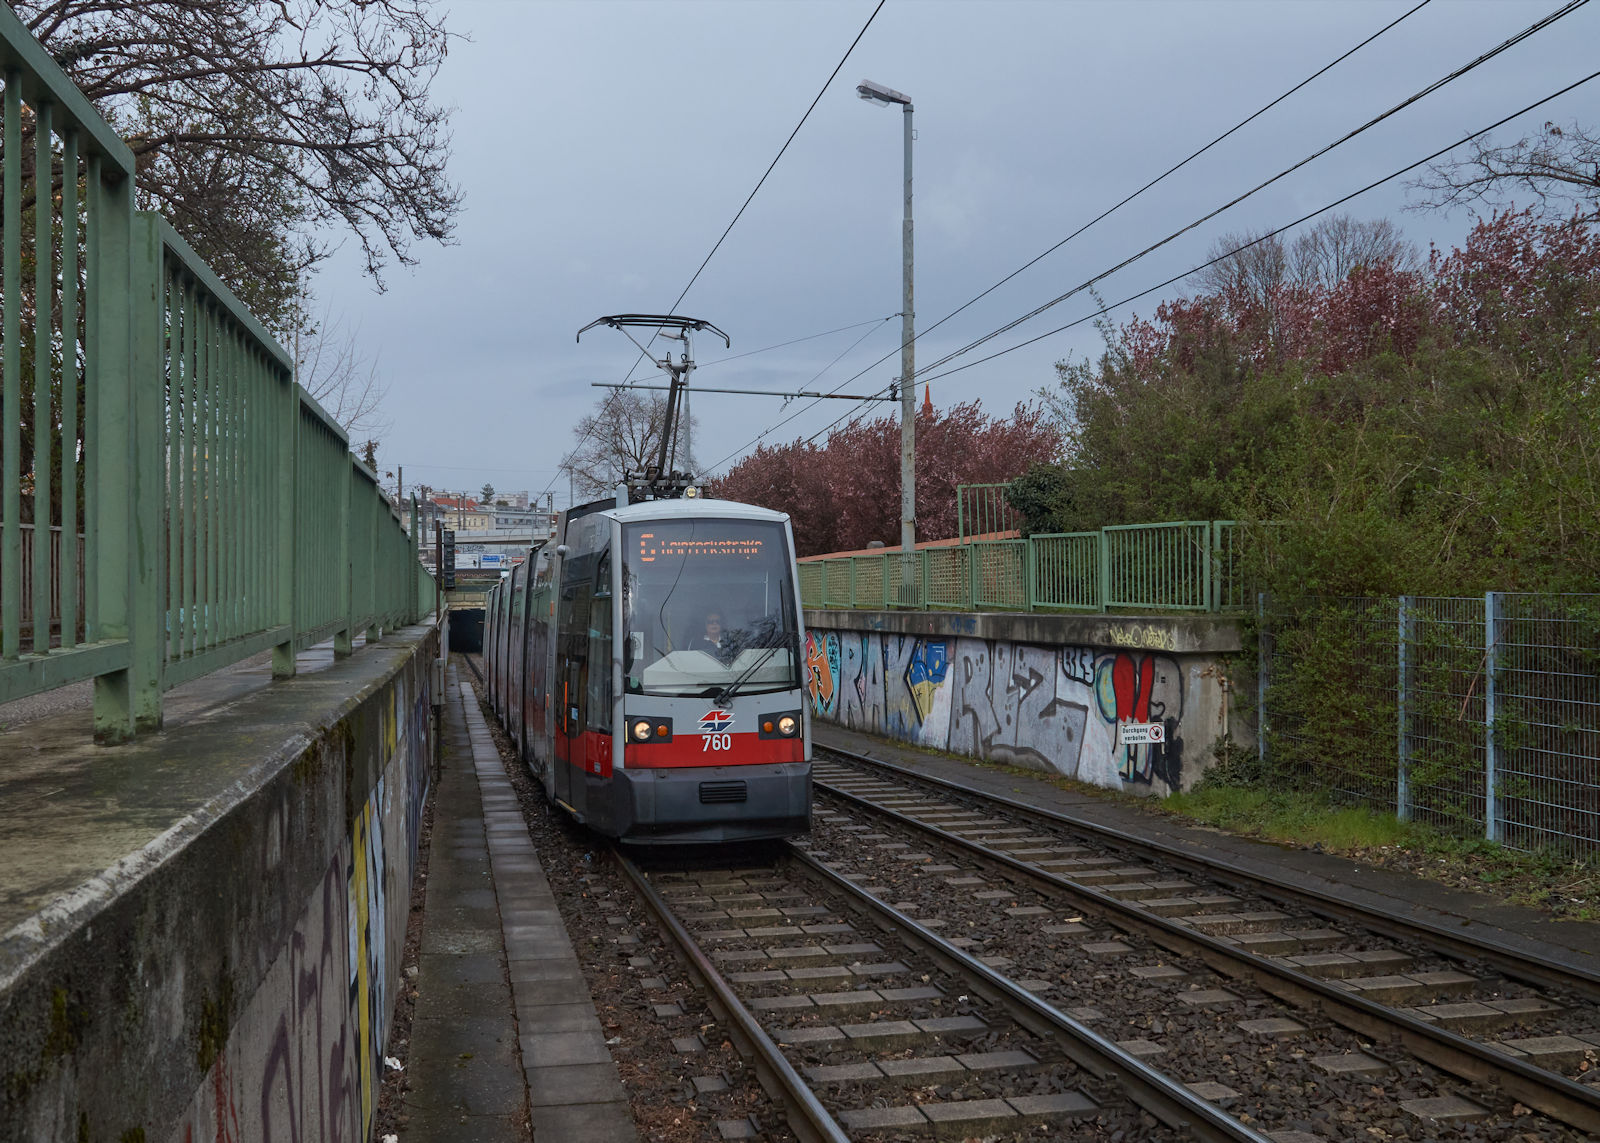 Unter dem Gürtel verkehrt die Wiener Linie 6 teilweise als Unterpflasterstraßenbahn. Am 05.04.2022 verließ B1 760 auf dem Weg zur Geiereckstraße gerade den Tunnelabschnitt und fährt in die Haltestelle Knöllgasse ein. Standort des Fotografen war der Haltestellenbereich. 